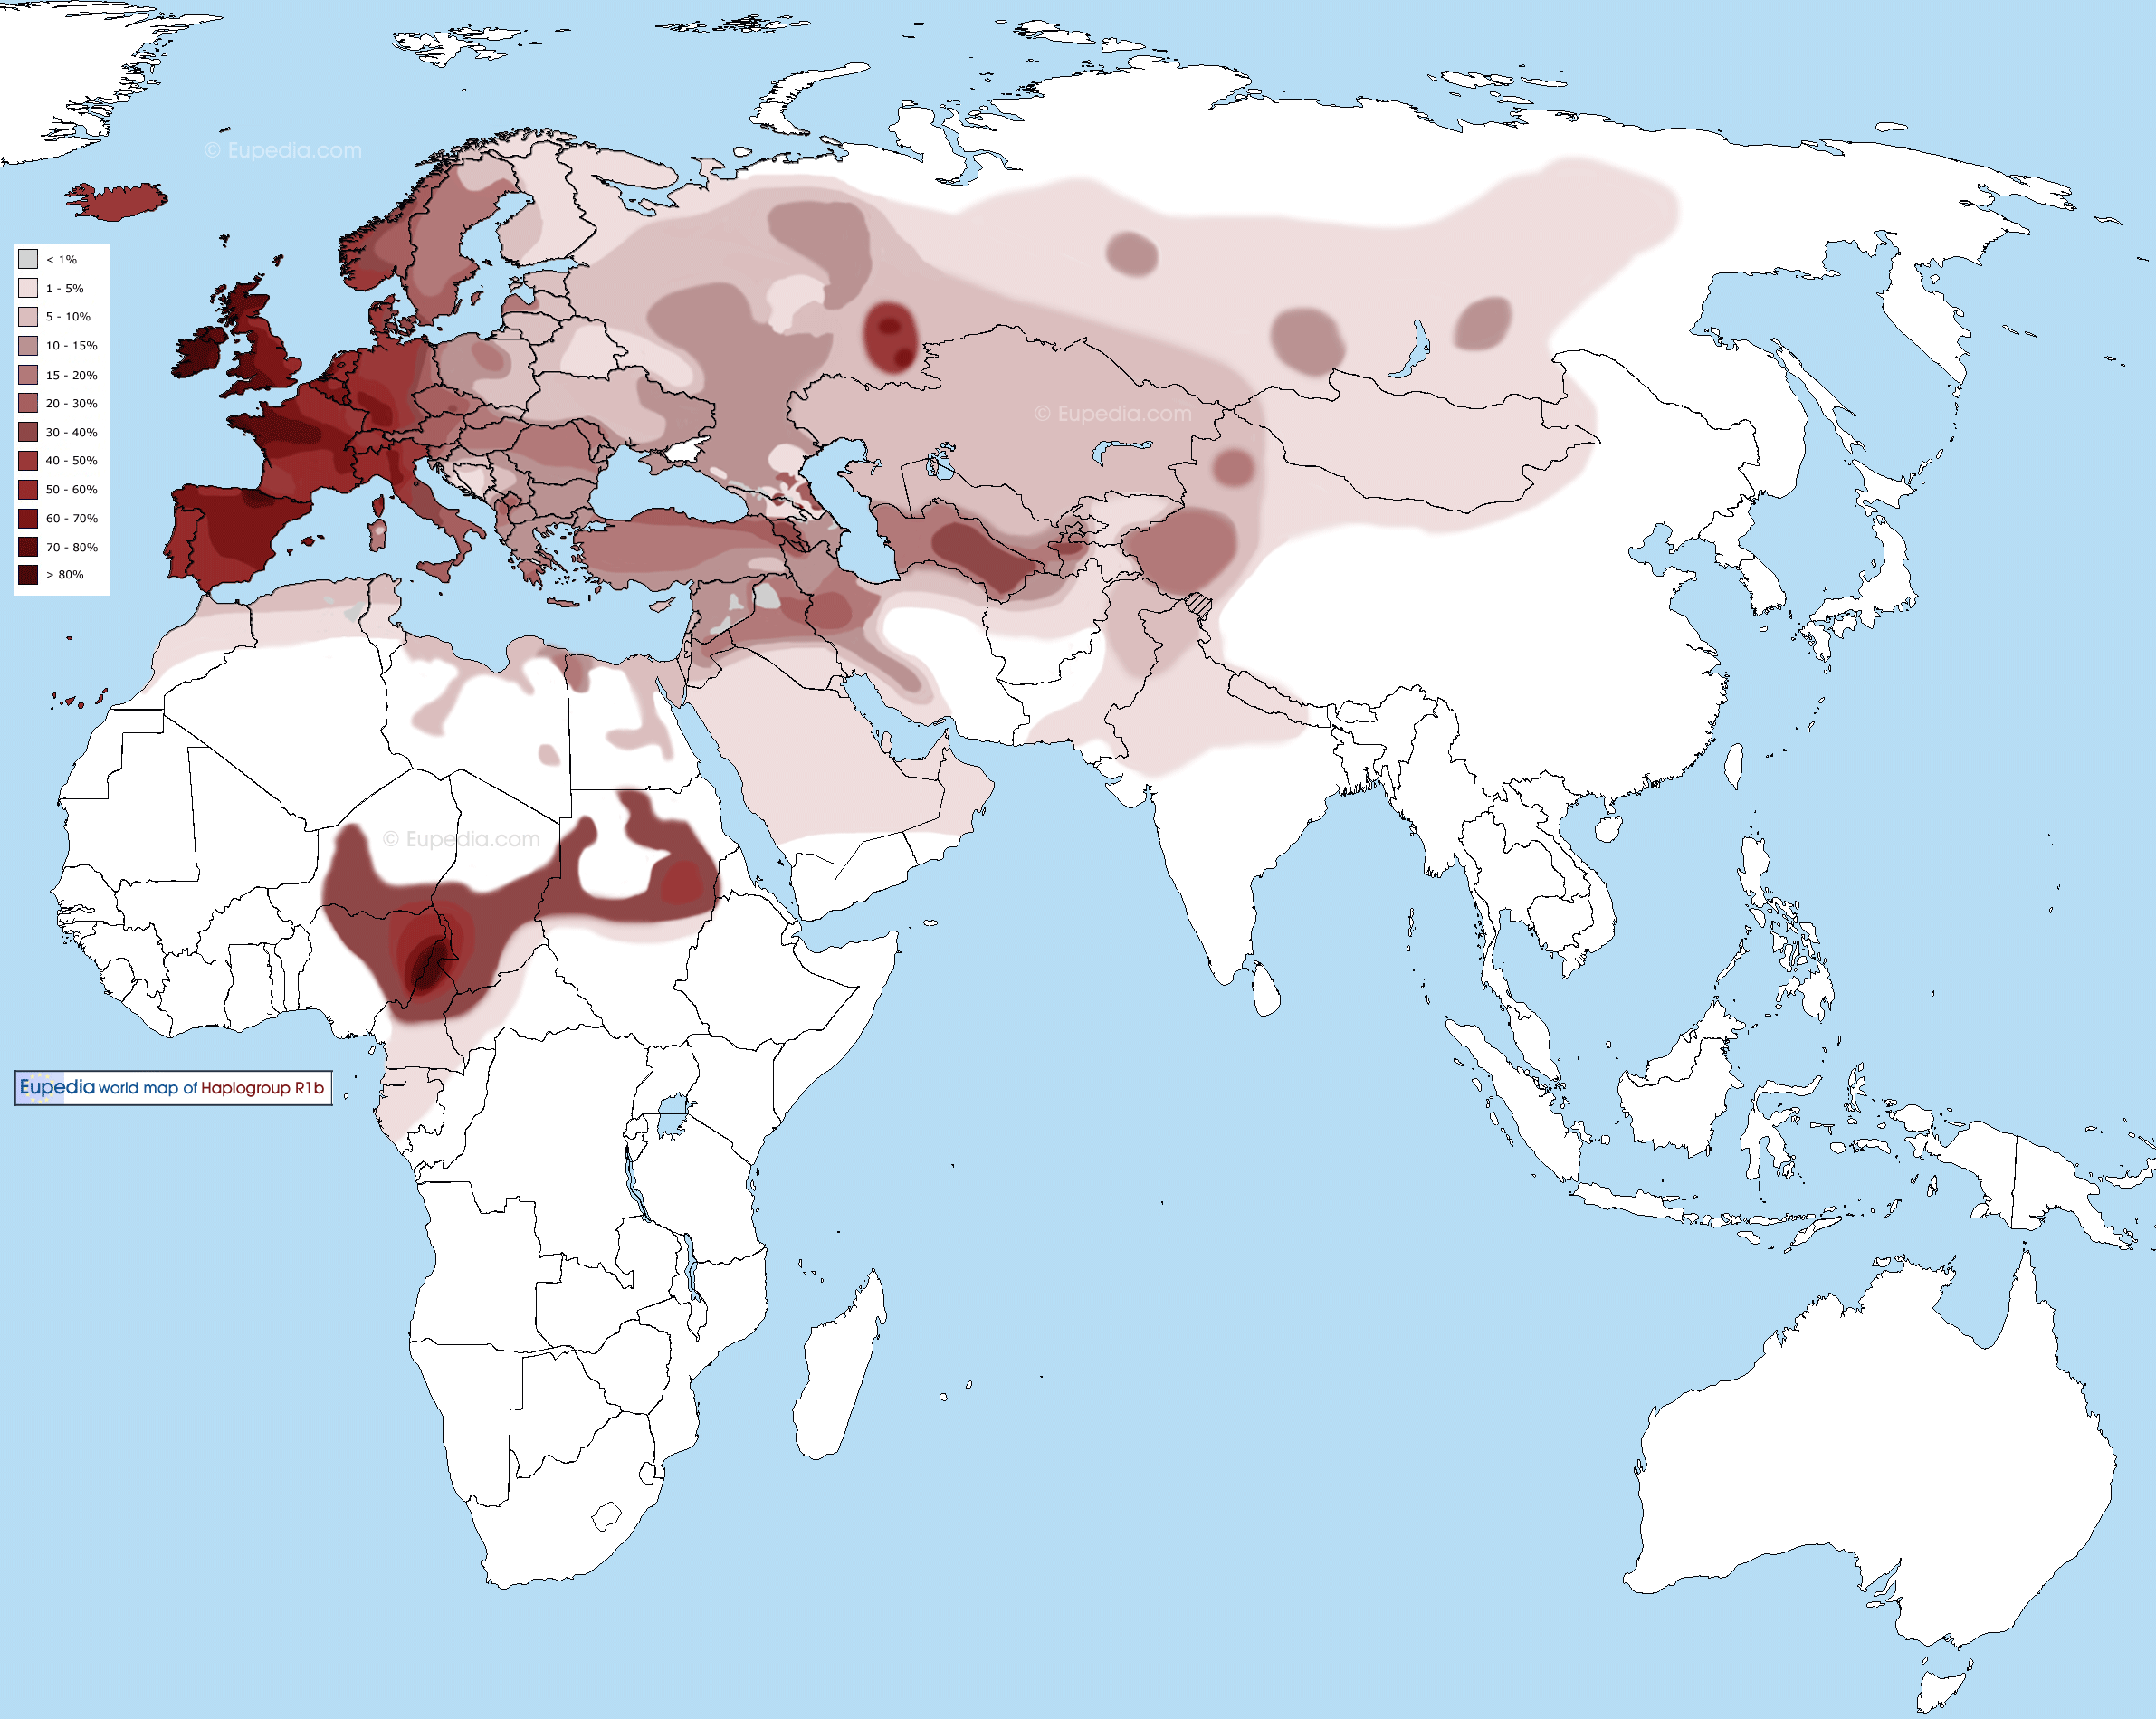 Répartition géographique de l'haplogroupe R1b en Europe